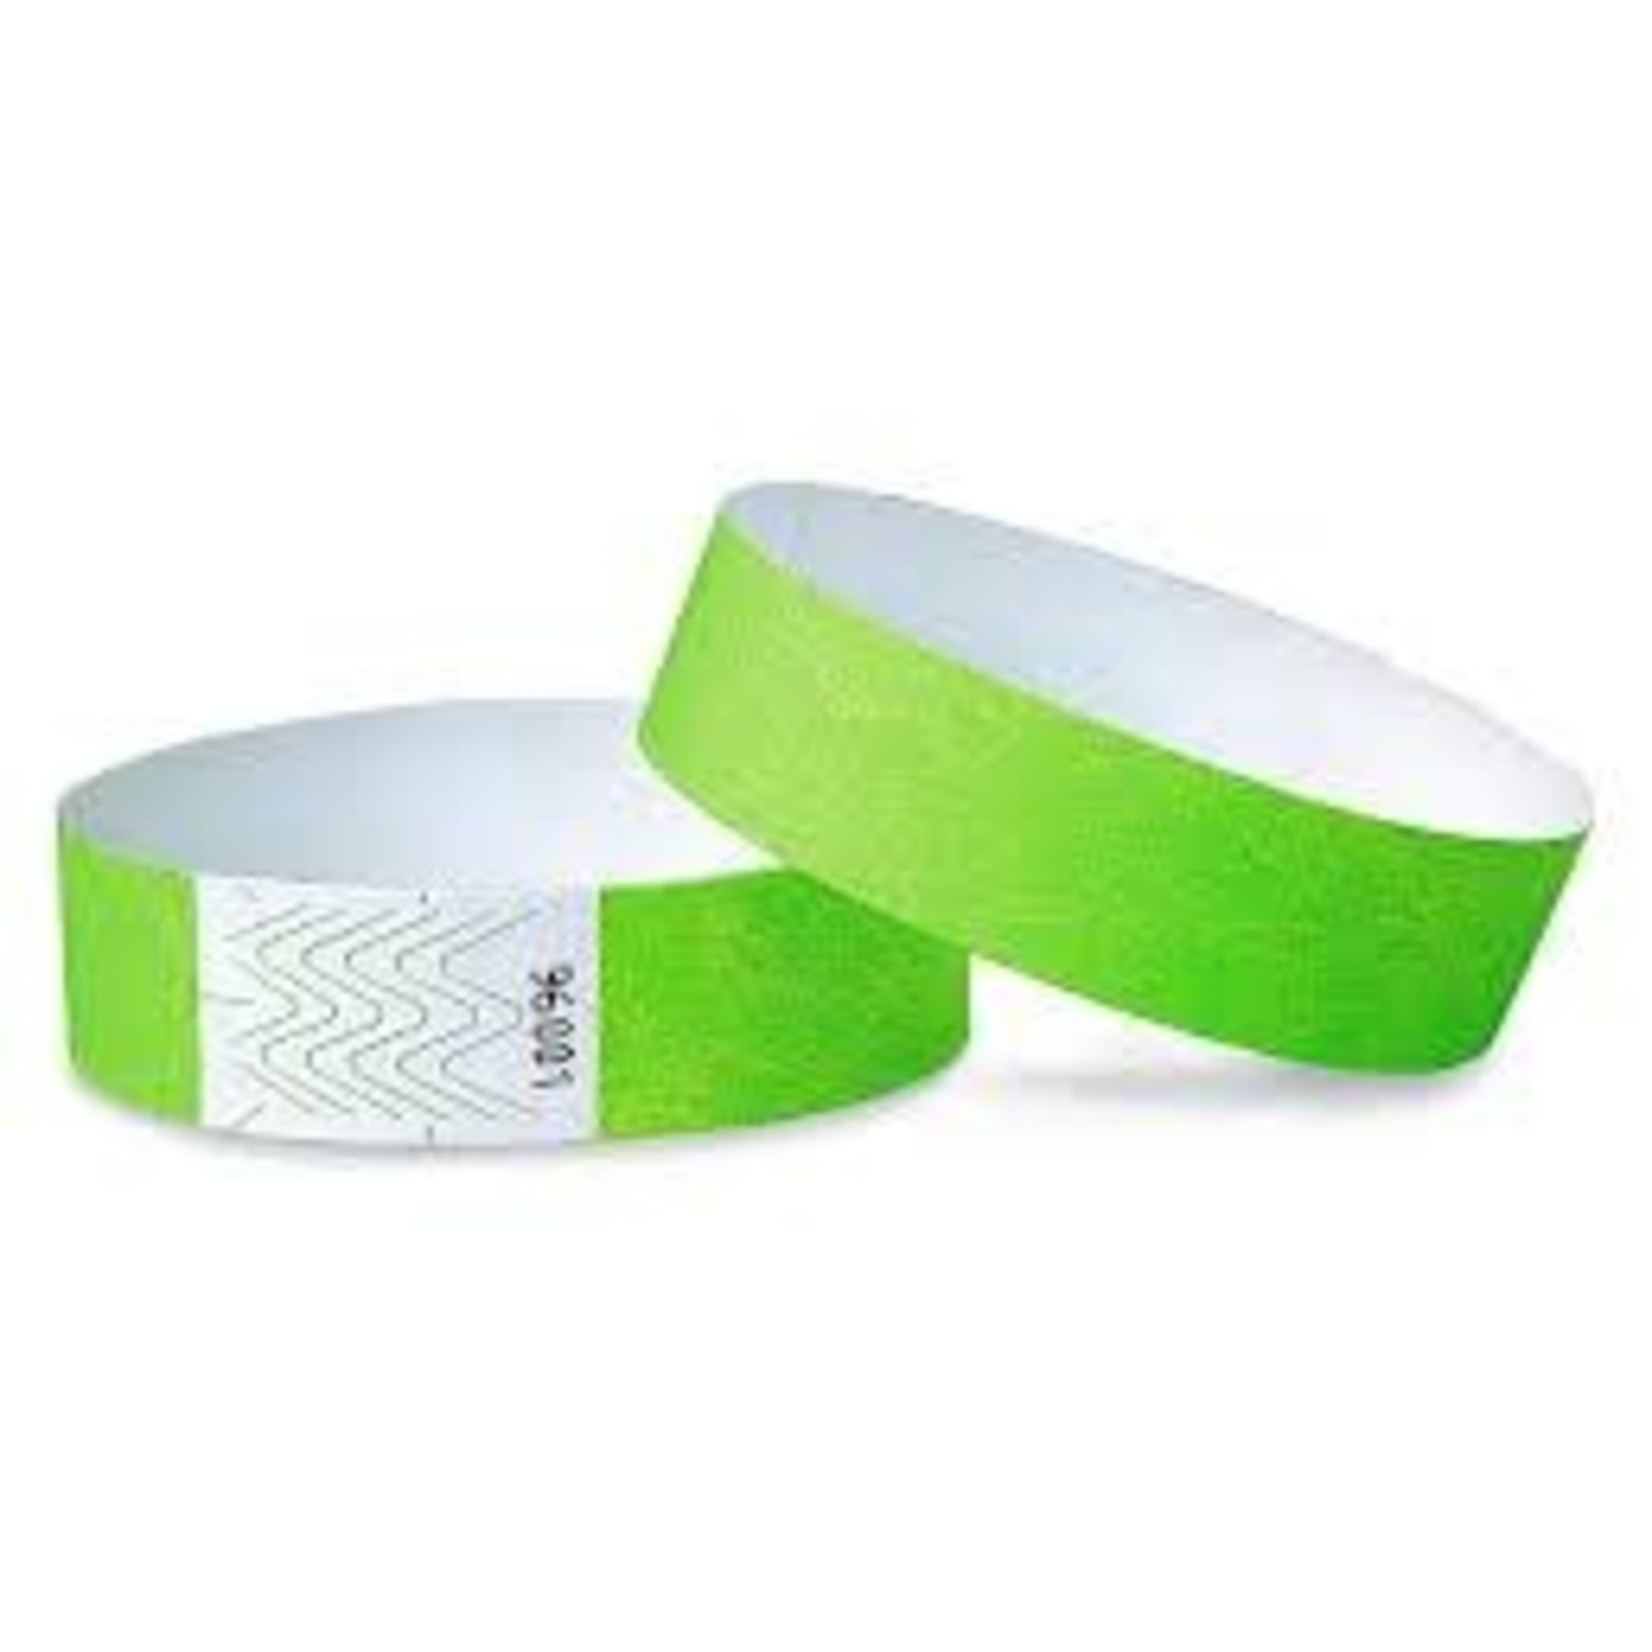 MedTech Wristbands Neon Green Supertek Adhesive Paper Wristbands - 100ct.